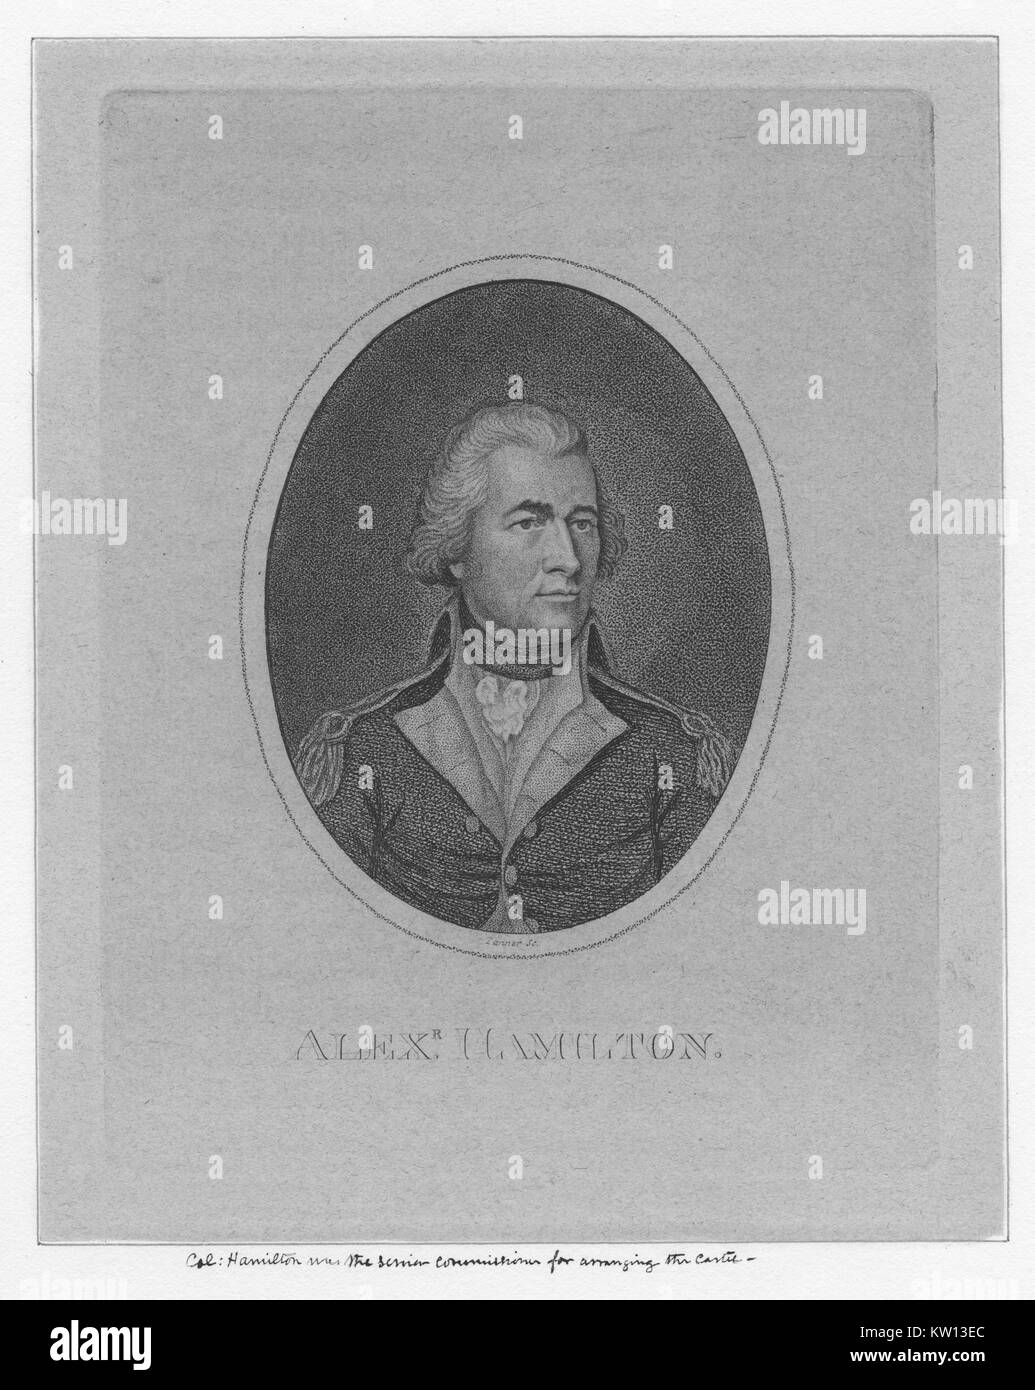 Une gravure d'un portrait d'Alexander Hamilton, il est montré portant son uniforme militaire, il a été l'un des pères fondateurs des États-Unis d'Amérique, a été chef de l'aide du personnel de George Washington pendant la guerre d'Indépendance américaine et fut le premier secrétaire au Trésor des États-Unis, 1800. À partir de la Bibliothèque publique de New York. Banque D'Images